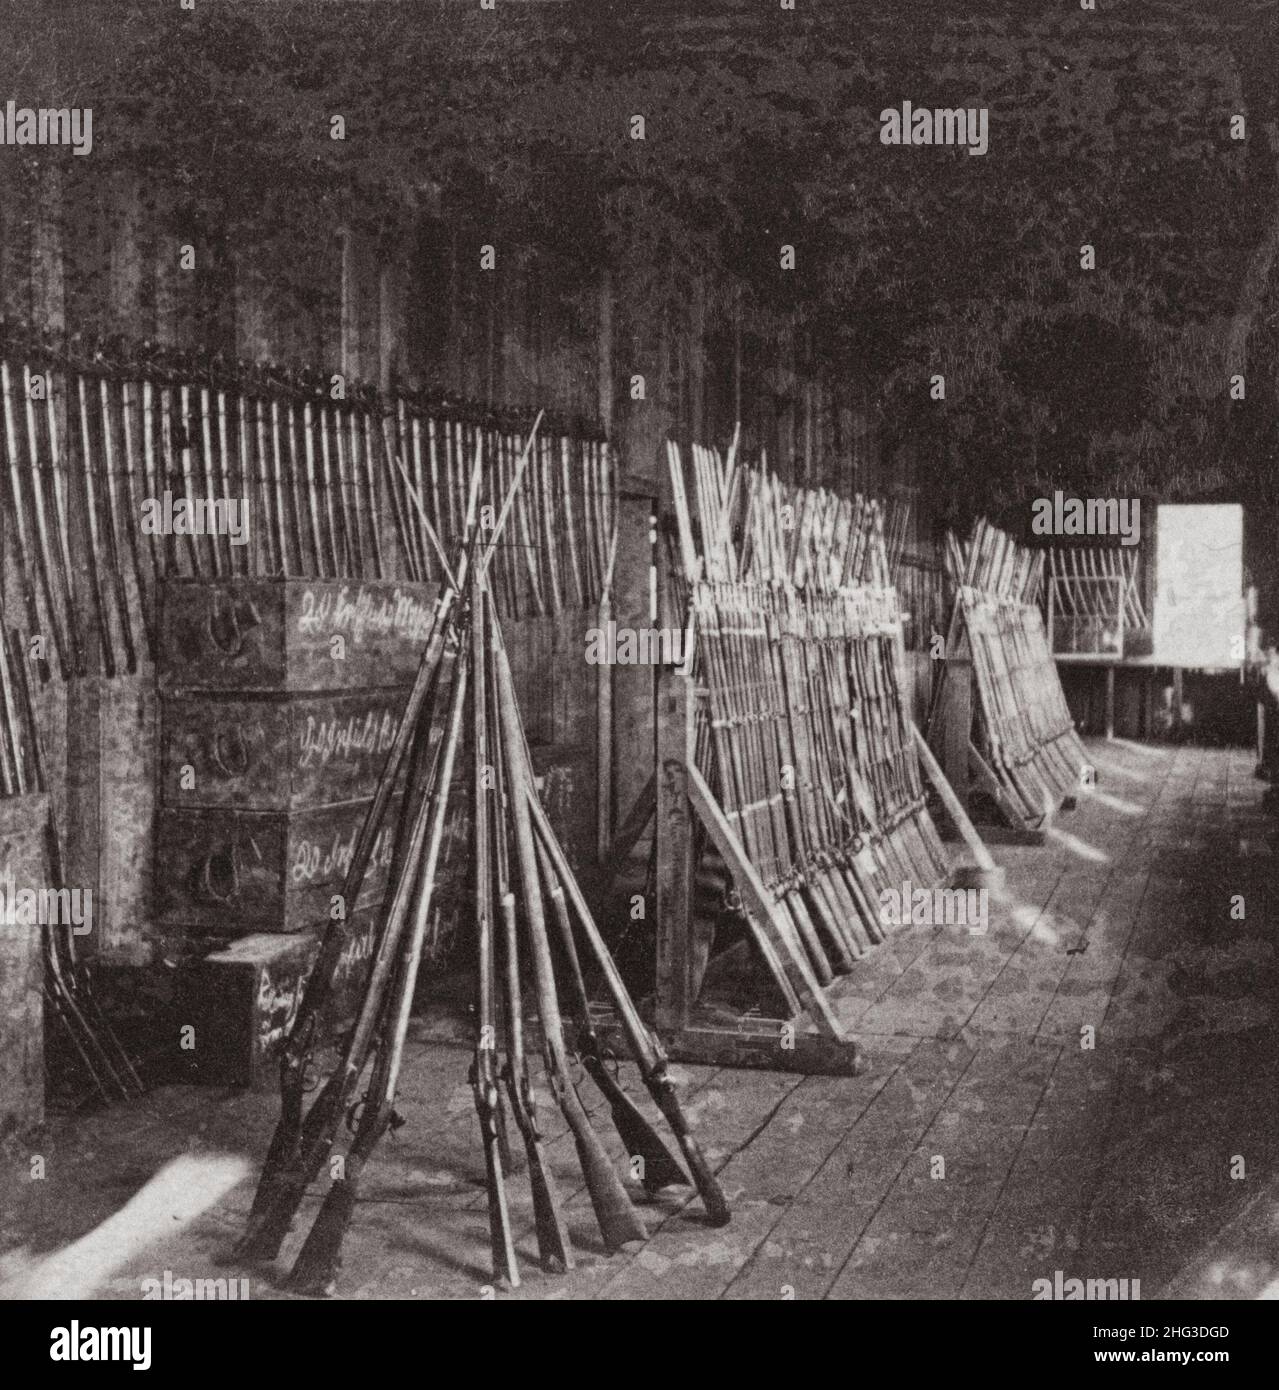 Guerre de Sécession.1861-1865 carabines à baïonnette sur des casiers à l'arsenal de 134th Illinois Volunteer Infantry, Columbus, Kentucky.ÉTATS-UNIS.1864 Banque D'Images